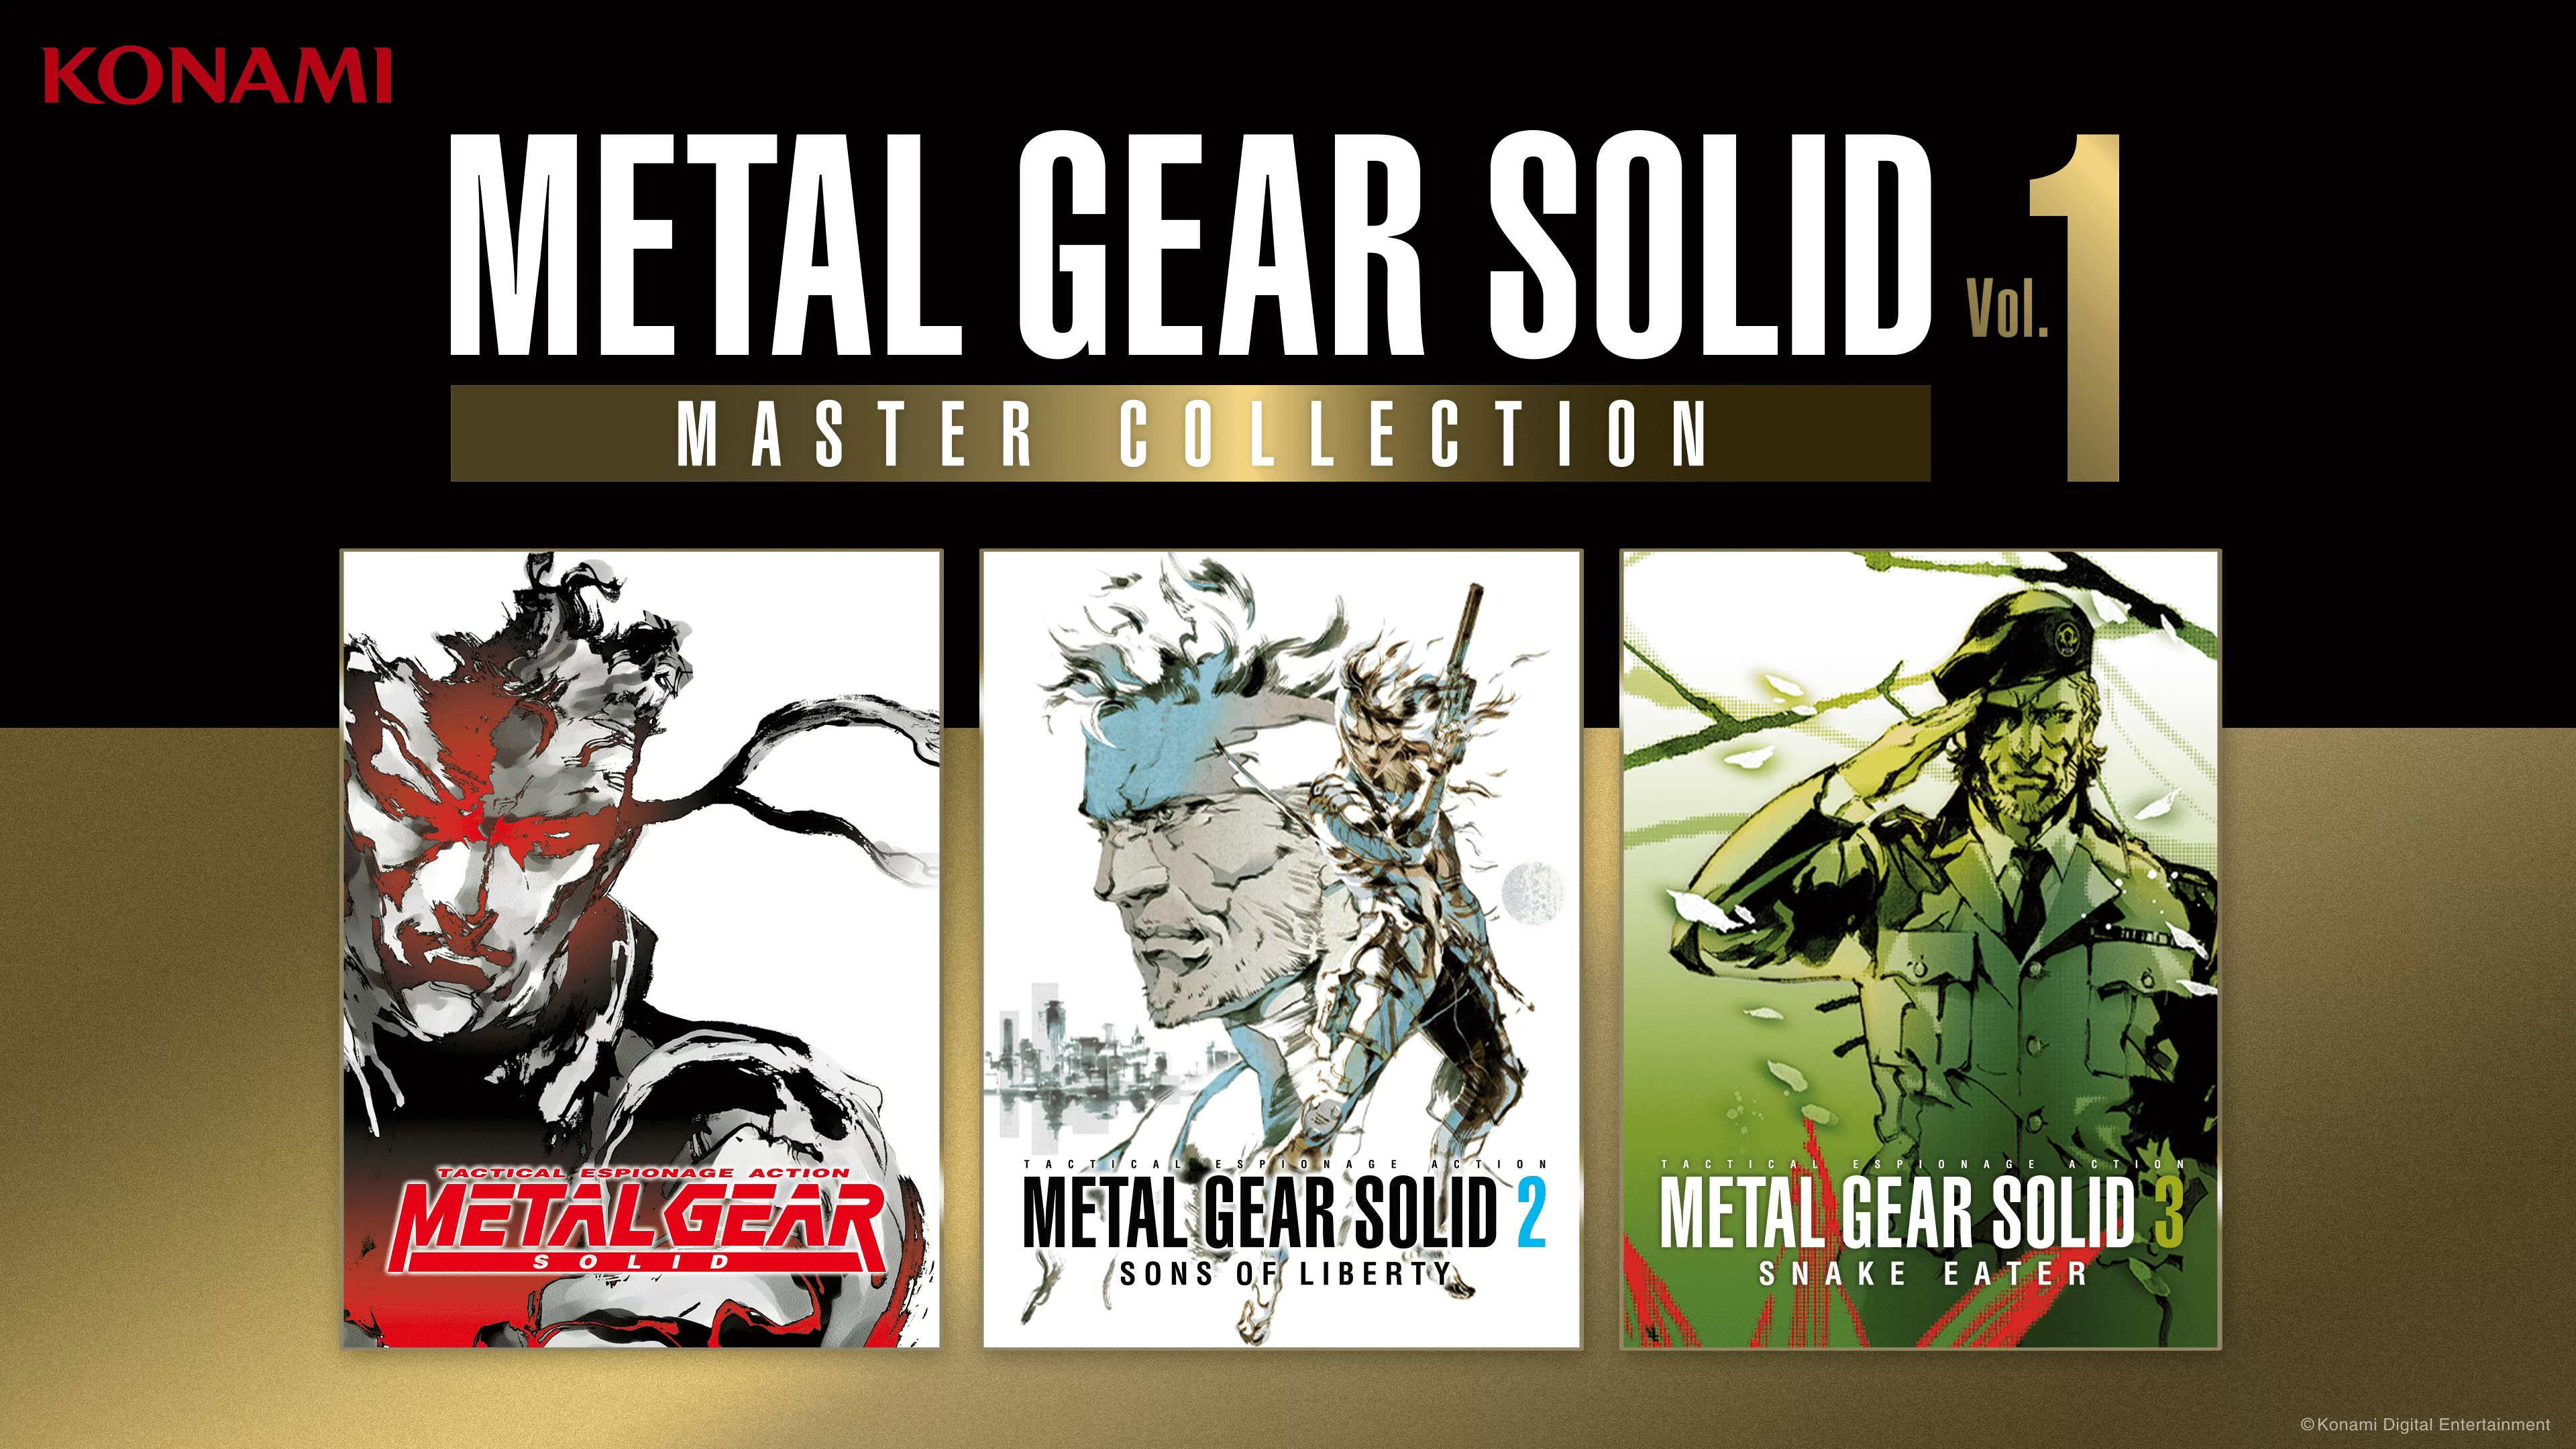 Vol. 1 koleksiyonu, METAL GEAR serisinin başlangıcını gözler önüne seren ve aşağıdaki oyunlardan oluşan bir paketten oluşuyor: